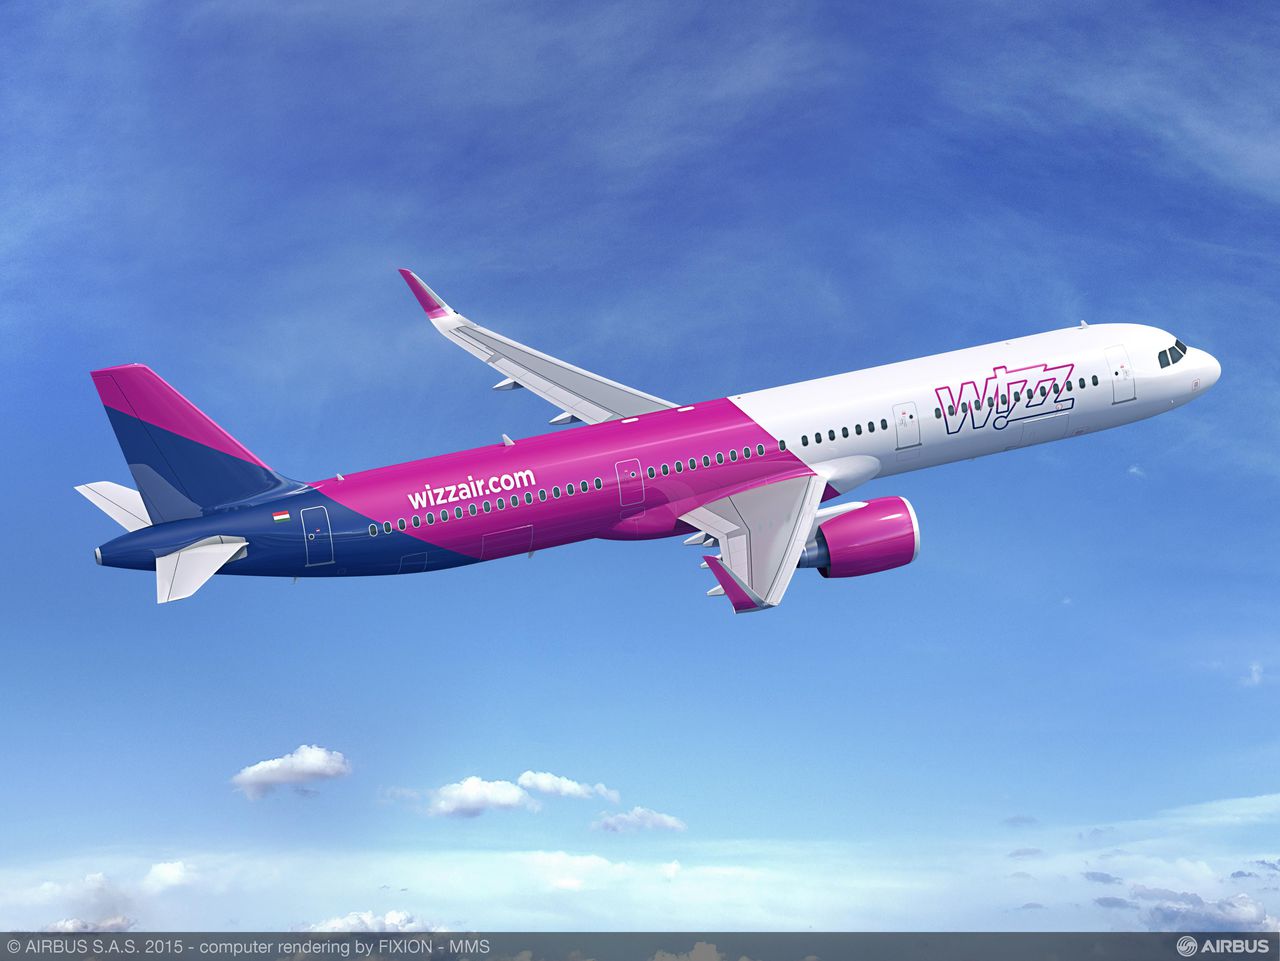 A321neo látványterv a Wizz Air színeiben. Forrás: Airbus | © AIRportal.hu